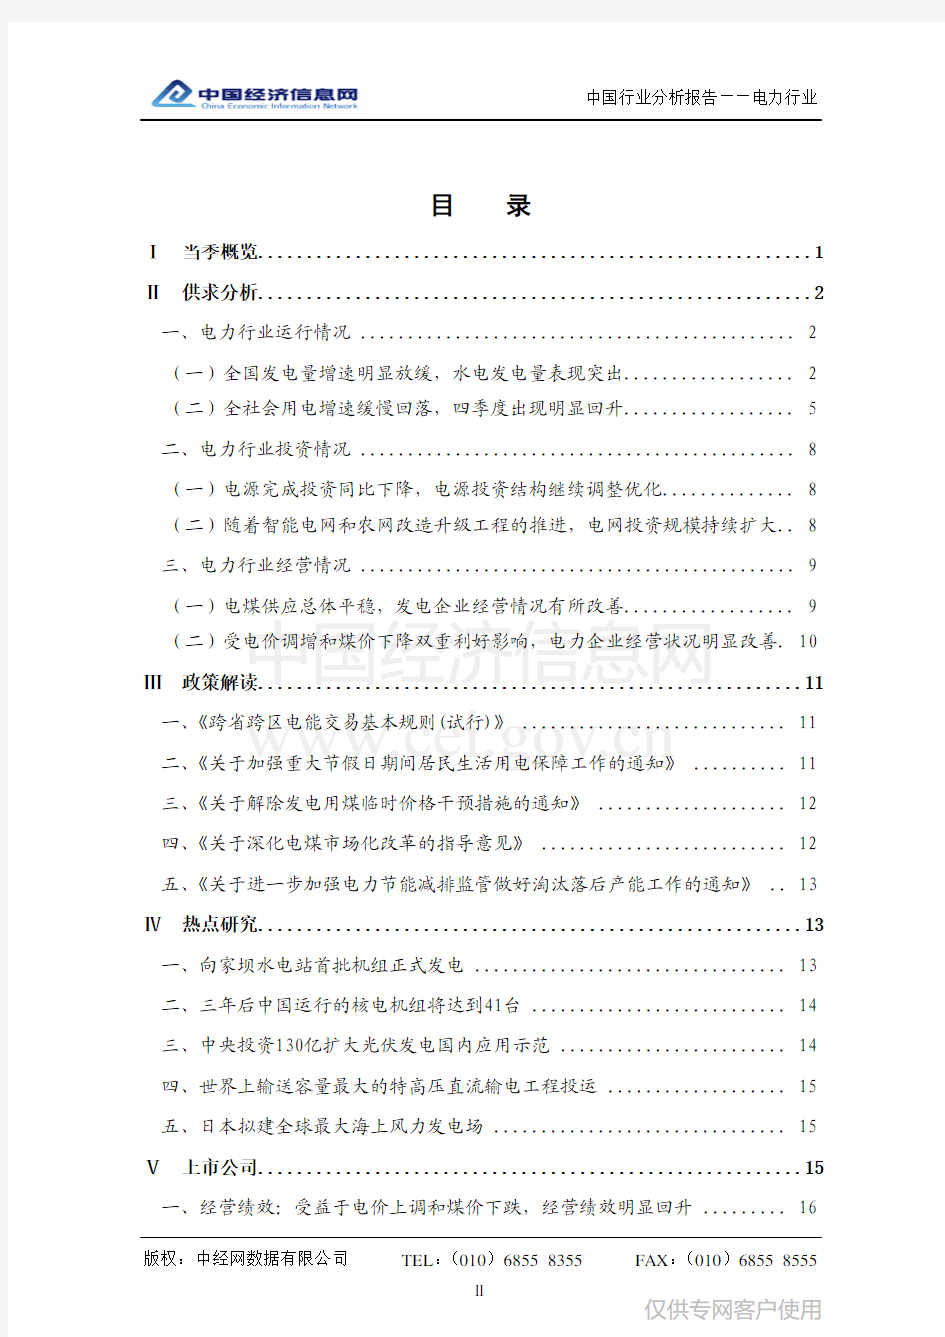 中国电力行业分析报告(2012年四季度)